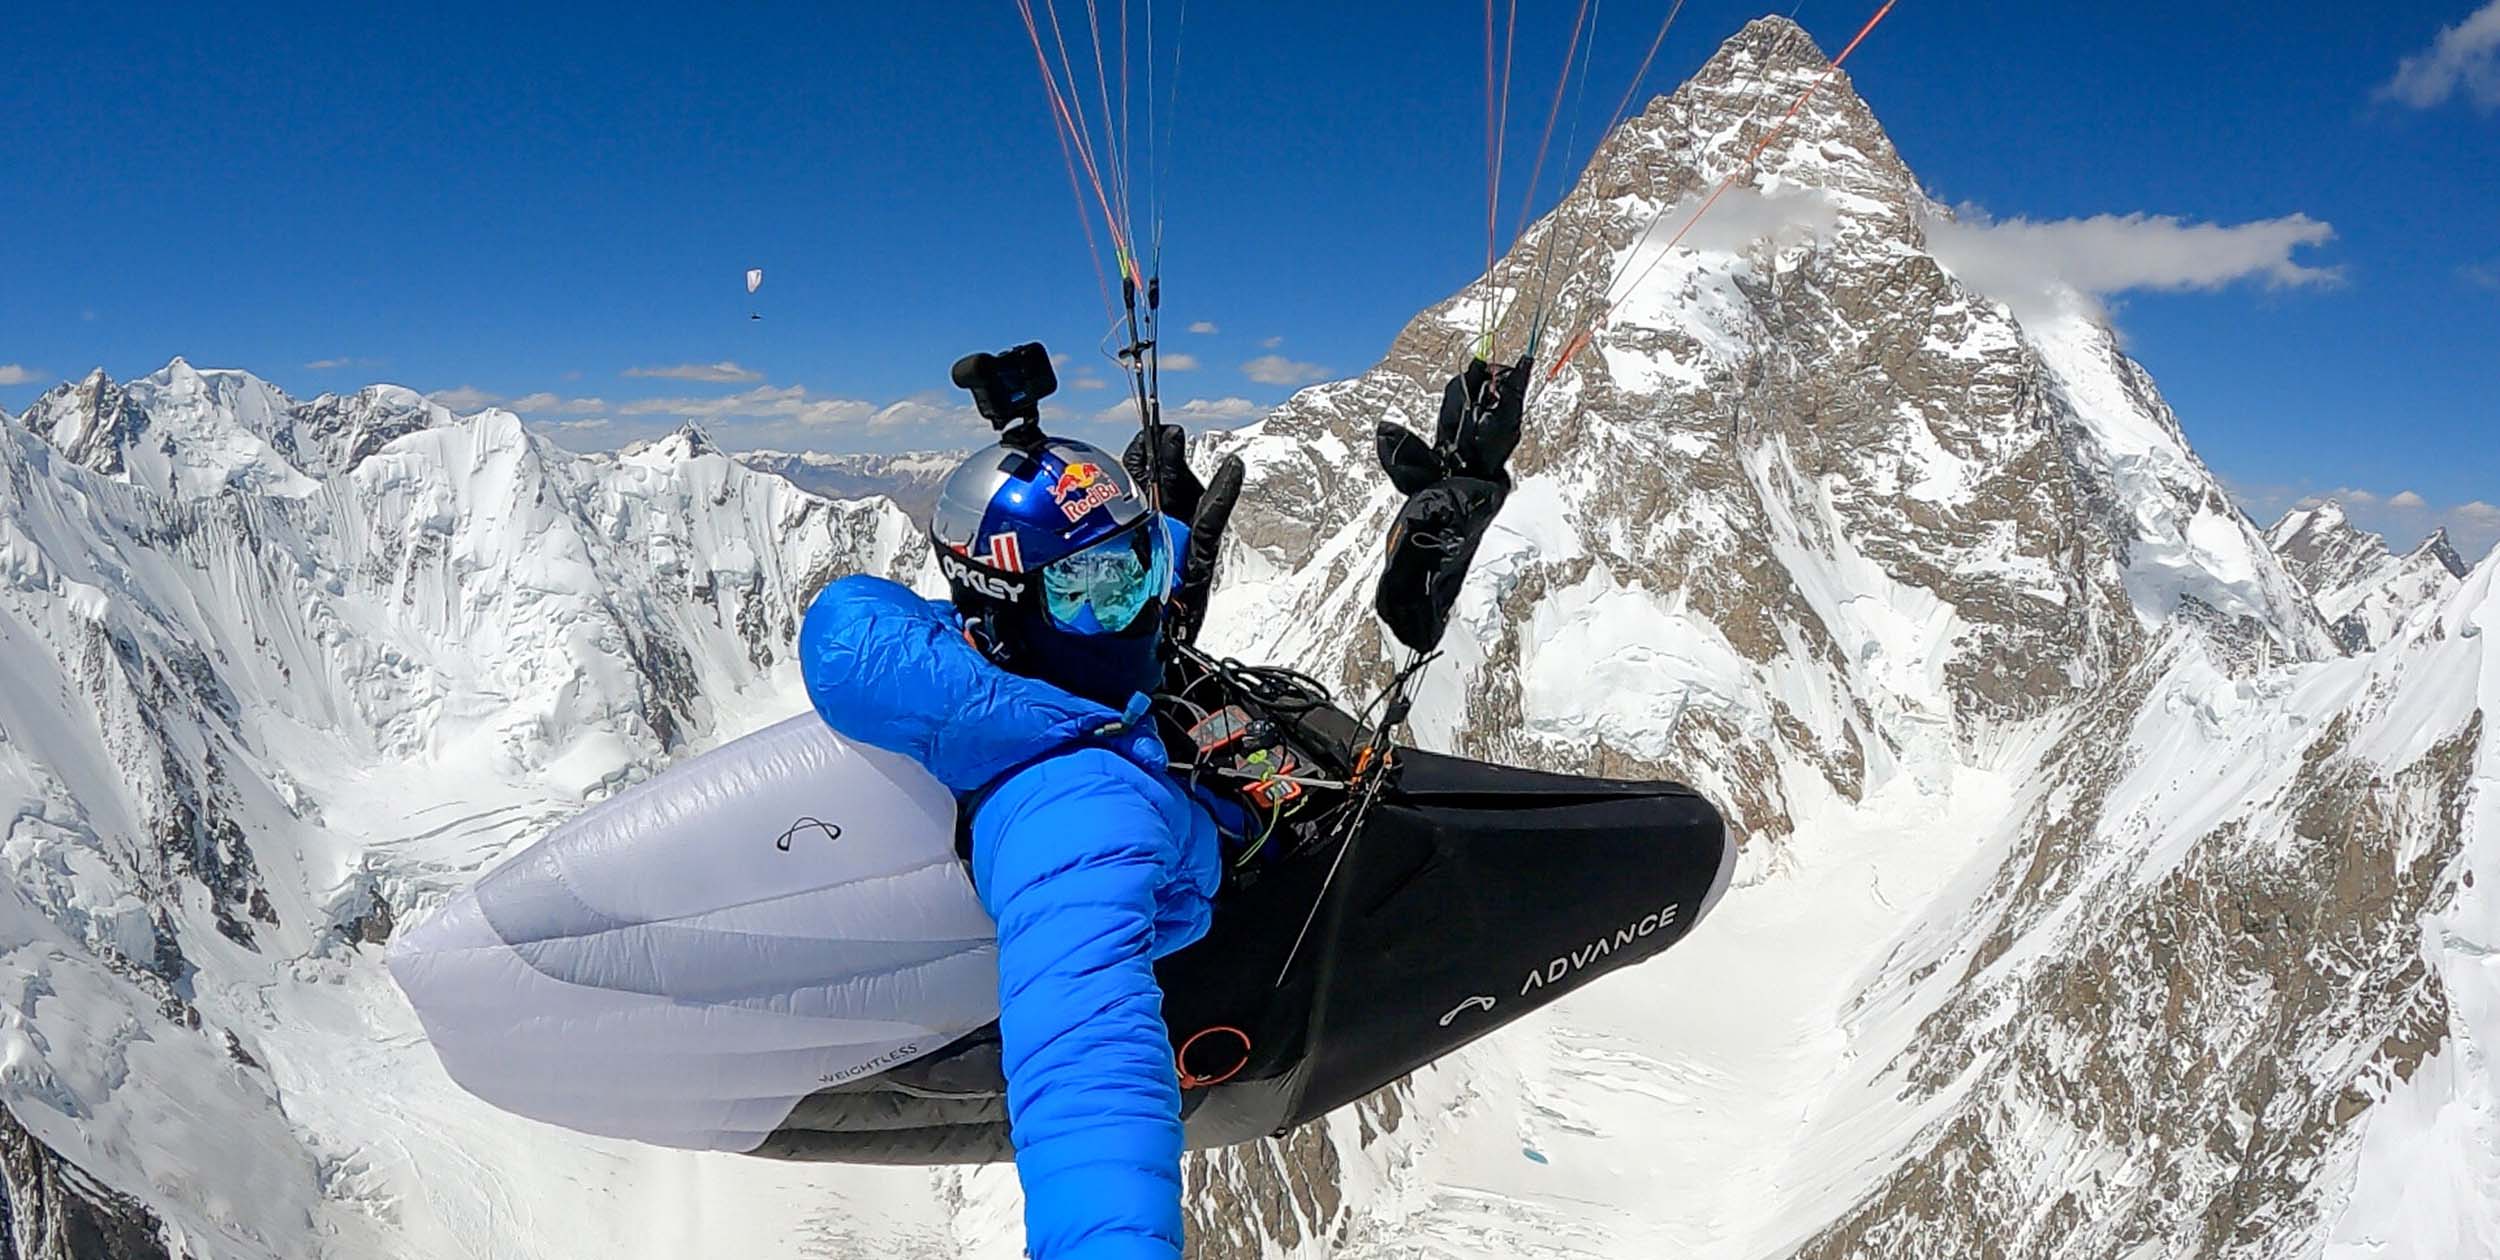 Tom de Dorlodot in front on K2, the world's second highest mountain. Photo: Tom de Dorlodot